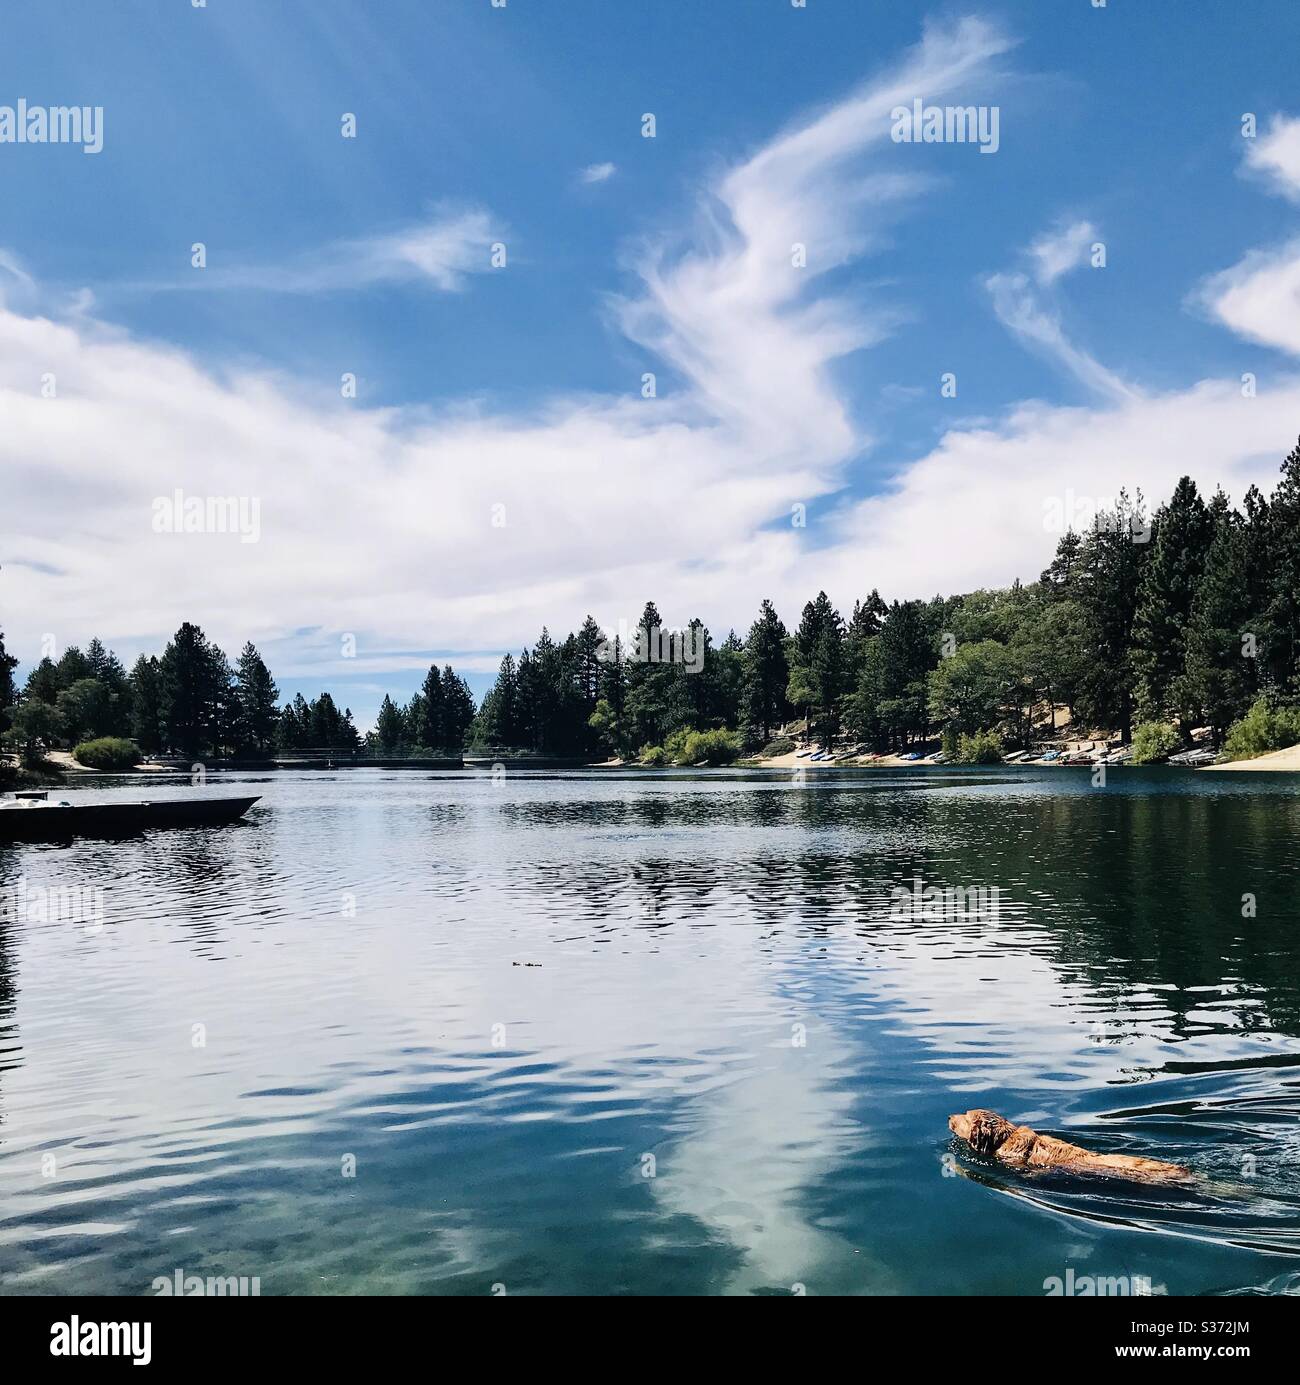 A golden retriever swims in a mountain lake. Stock Photo